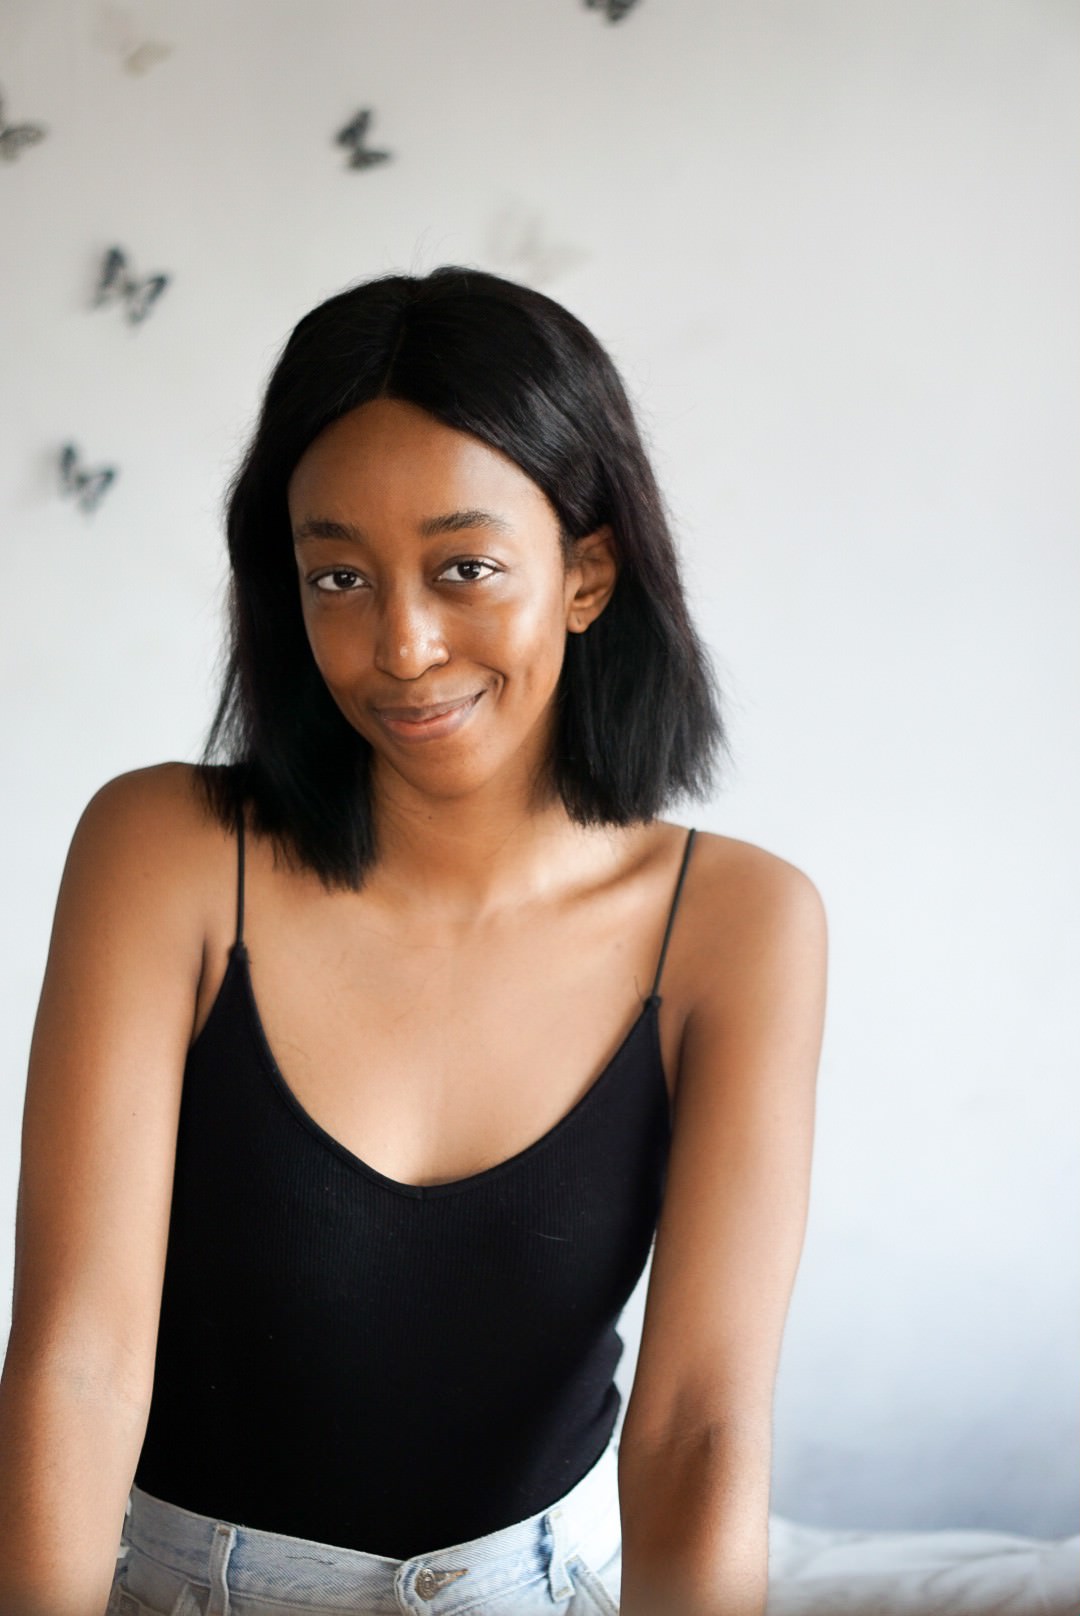 nigerian skingcare blogger cassie daves self portrait niacinamide for skincare